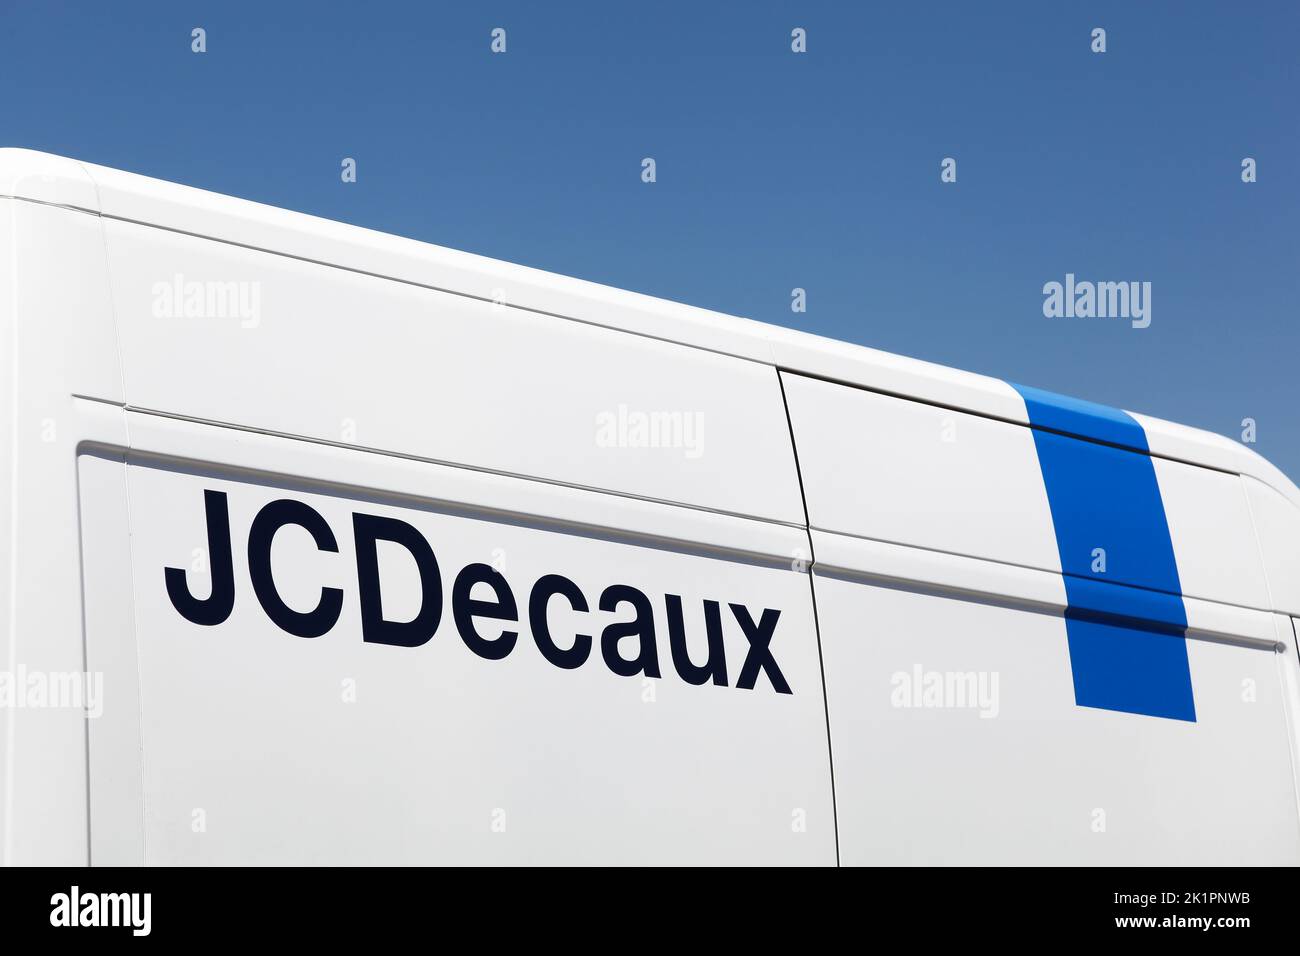 DECINES, Francia - 13 giugno 2019: JCDecaux è una multinazionale con sede in Francia, nota per i suoi sistemi di pubblicità bus-stop e cartelloni Foto Stock